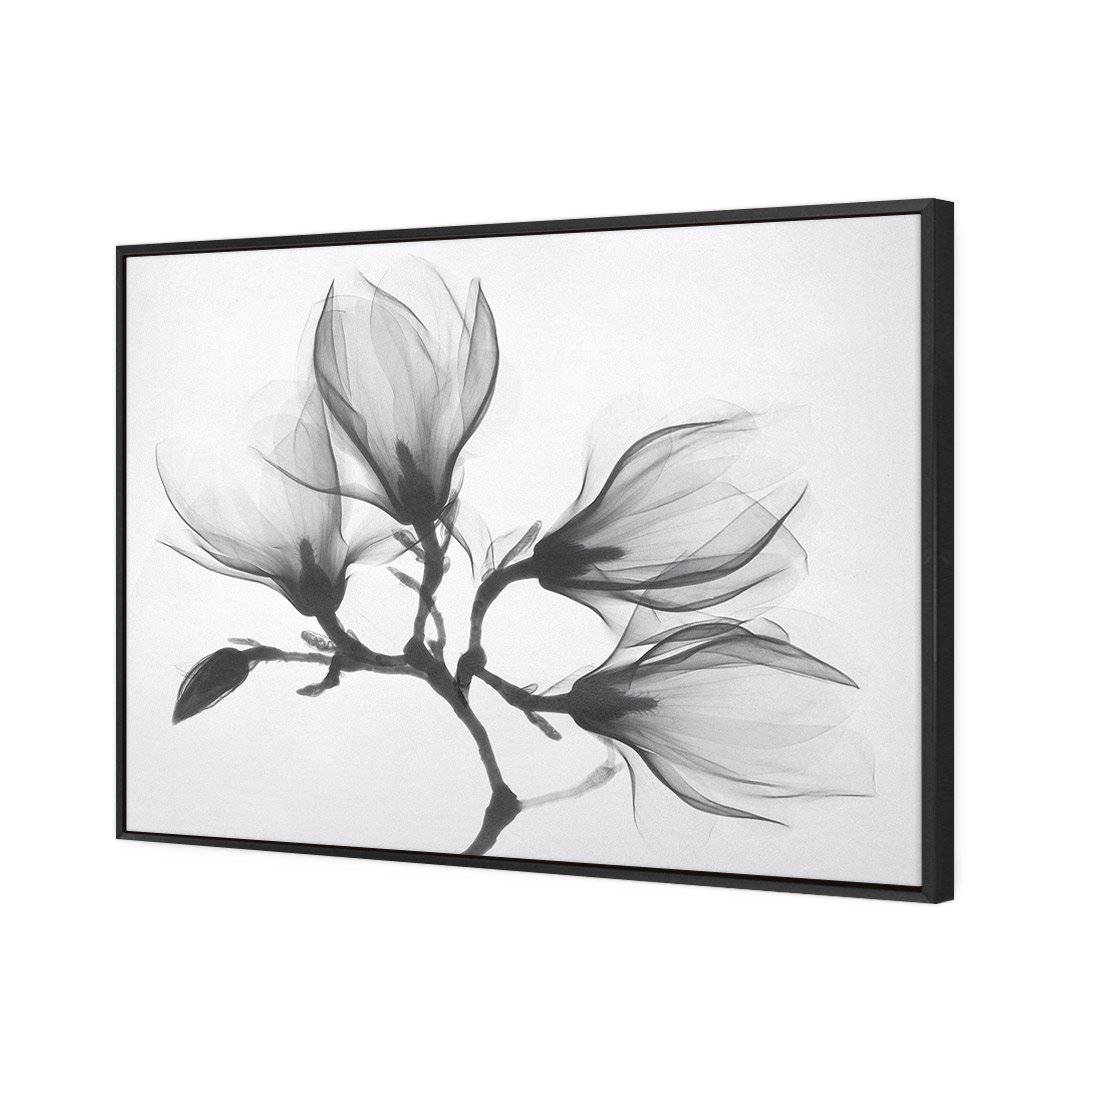 Magnolia Blossoms Canvas Art-Canvas-Wall Art Designs-45x30cm-Canvas - Black Frame-Wall Art Designs